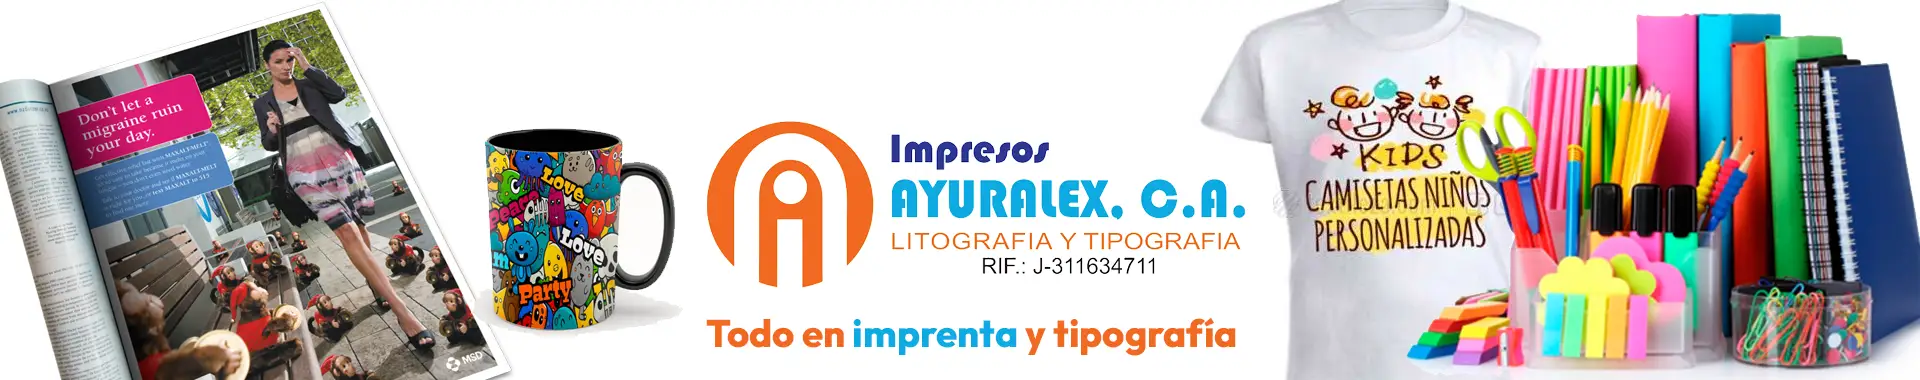 Imagen 1 del perfil de Impresos Ayuralex